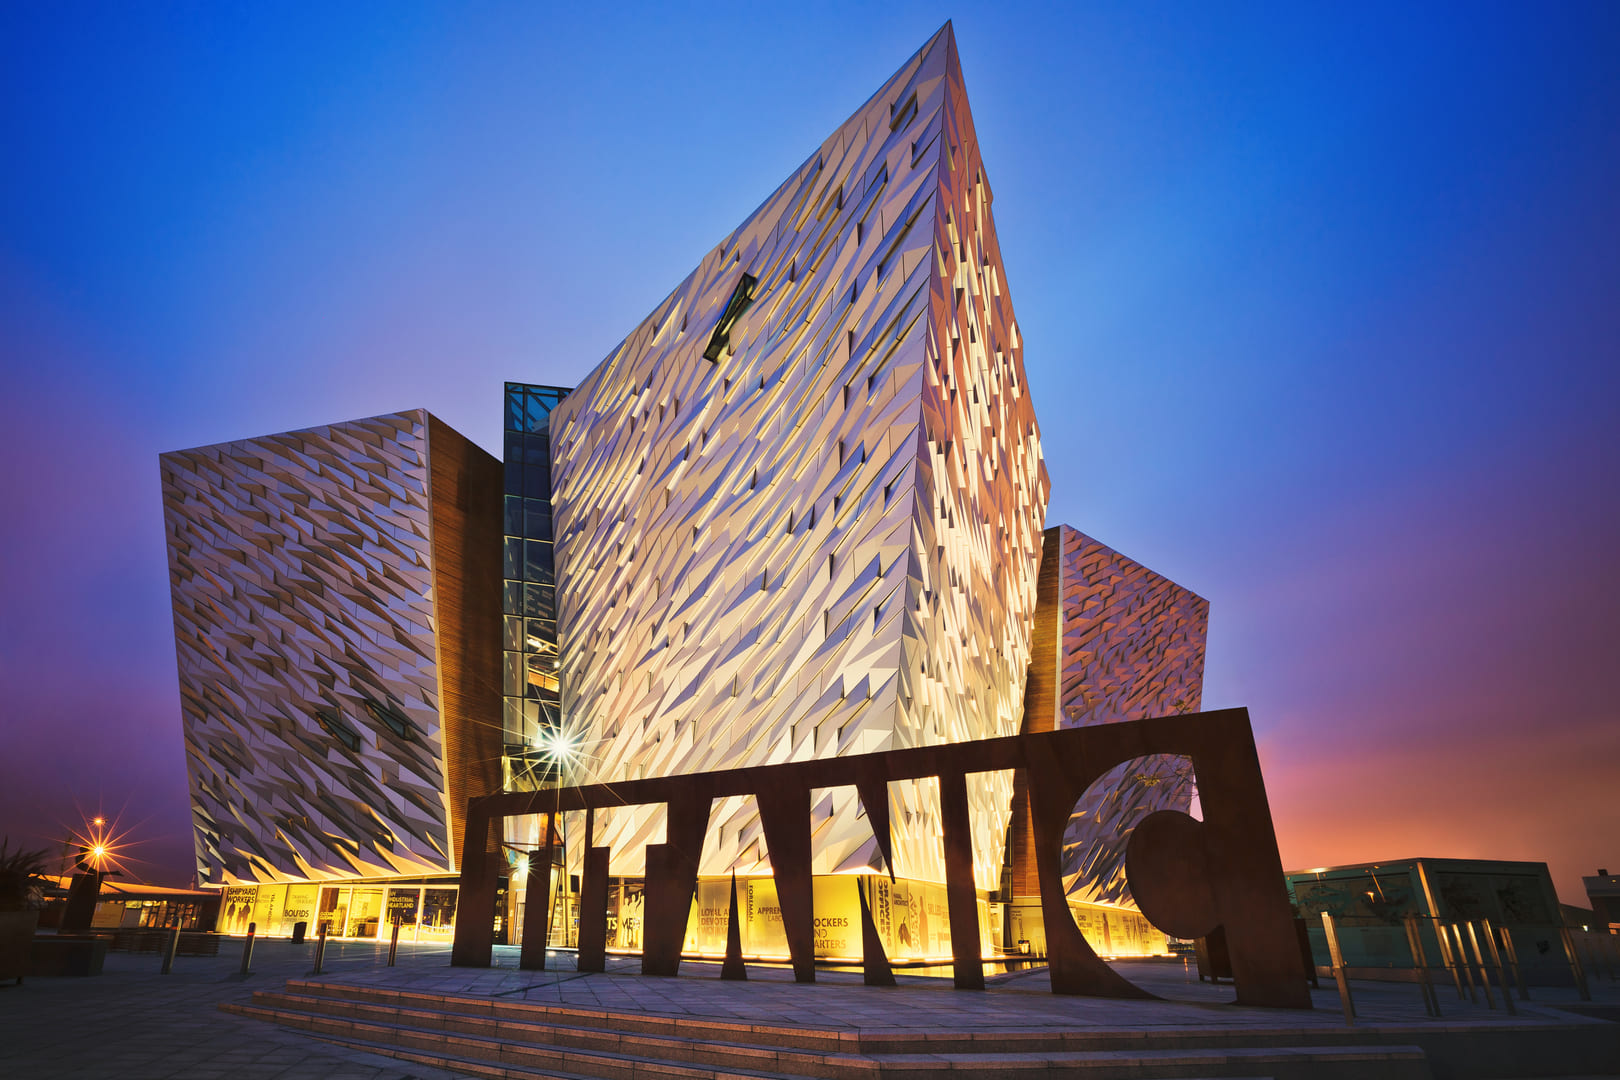 Coucher de soleil sur Titanic Belfast - musée, attraction touristique et monument au patrimoine maritime de Belfast sur le site de l'ancien chantier naval Harland and Wolff.